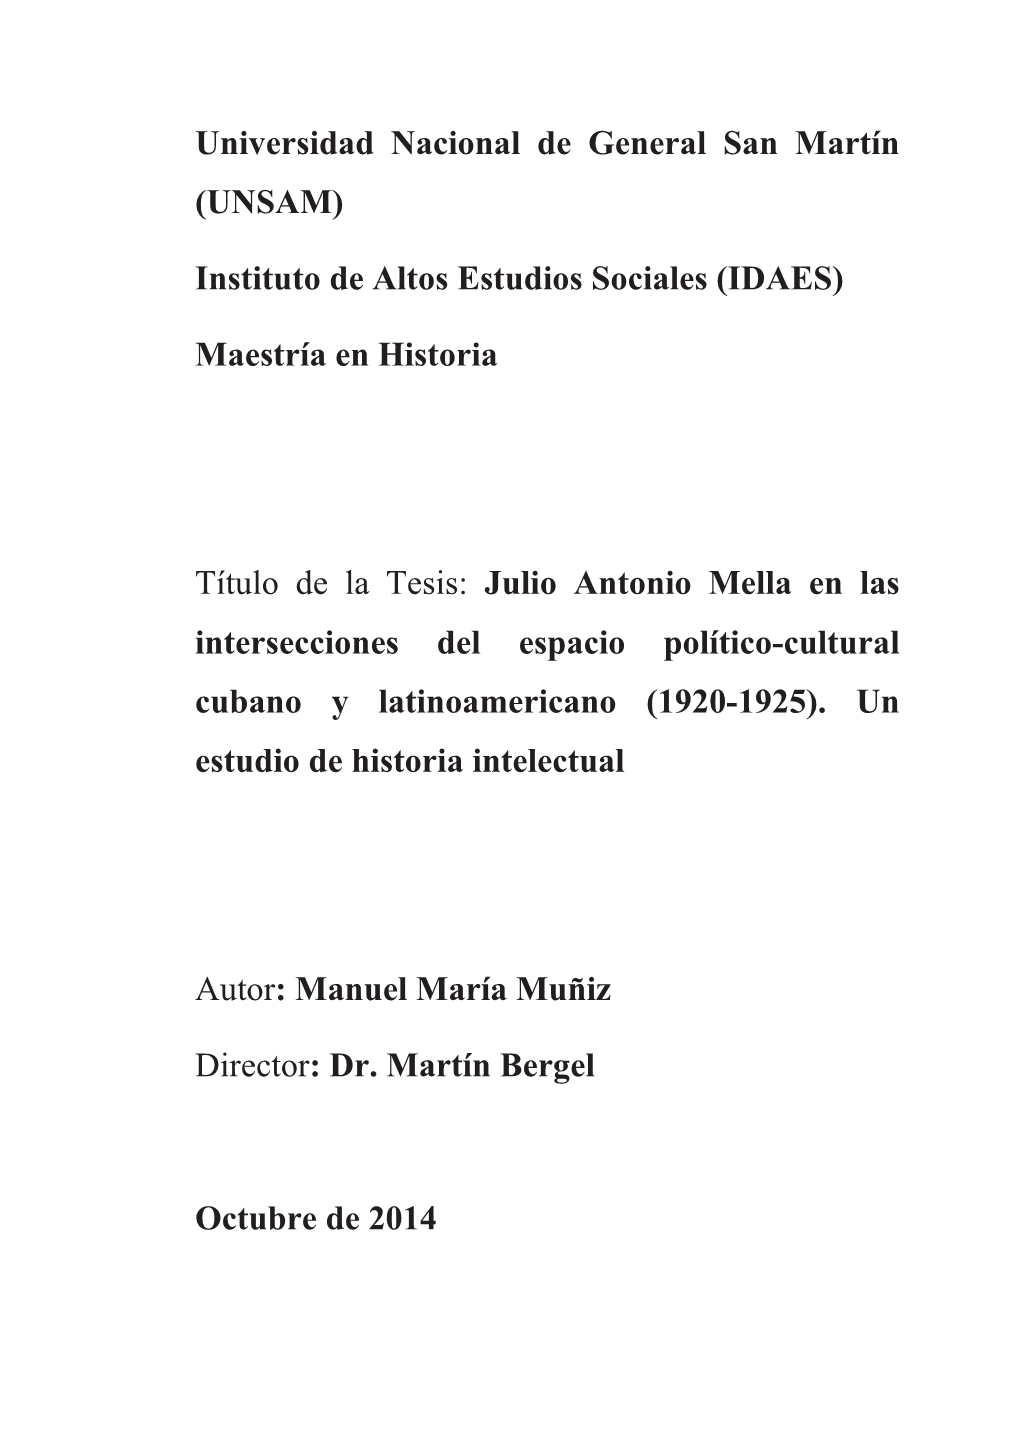 Julio Antonio Mella En Las Intersecciones Del Espacio Político-Cultural Cubano Y Latinoamericano (1920-1925)